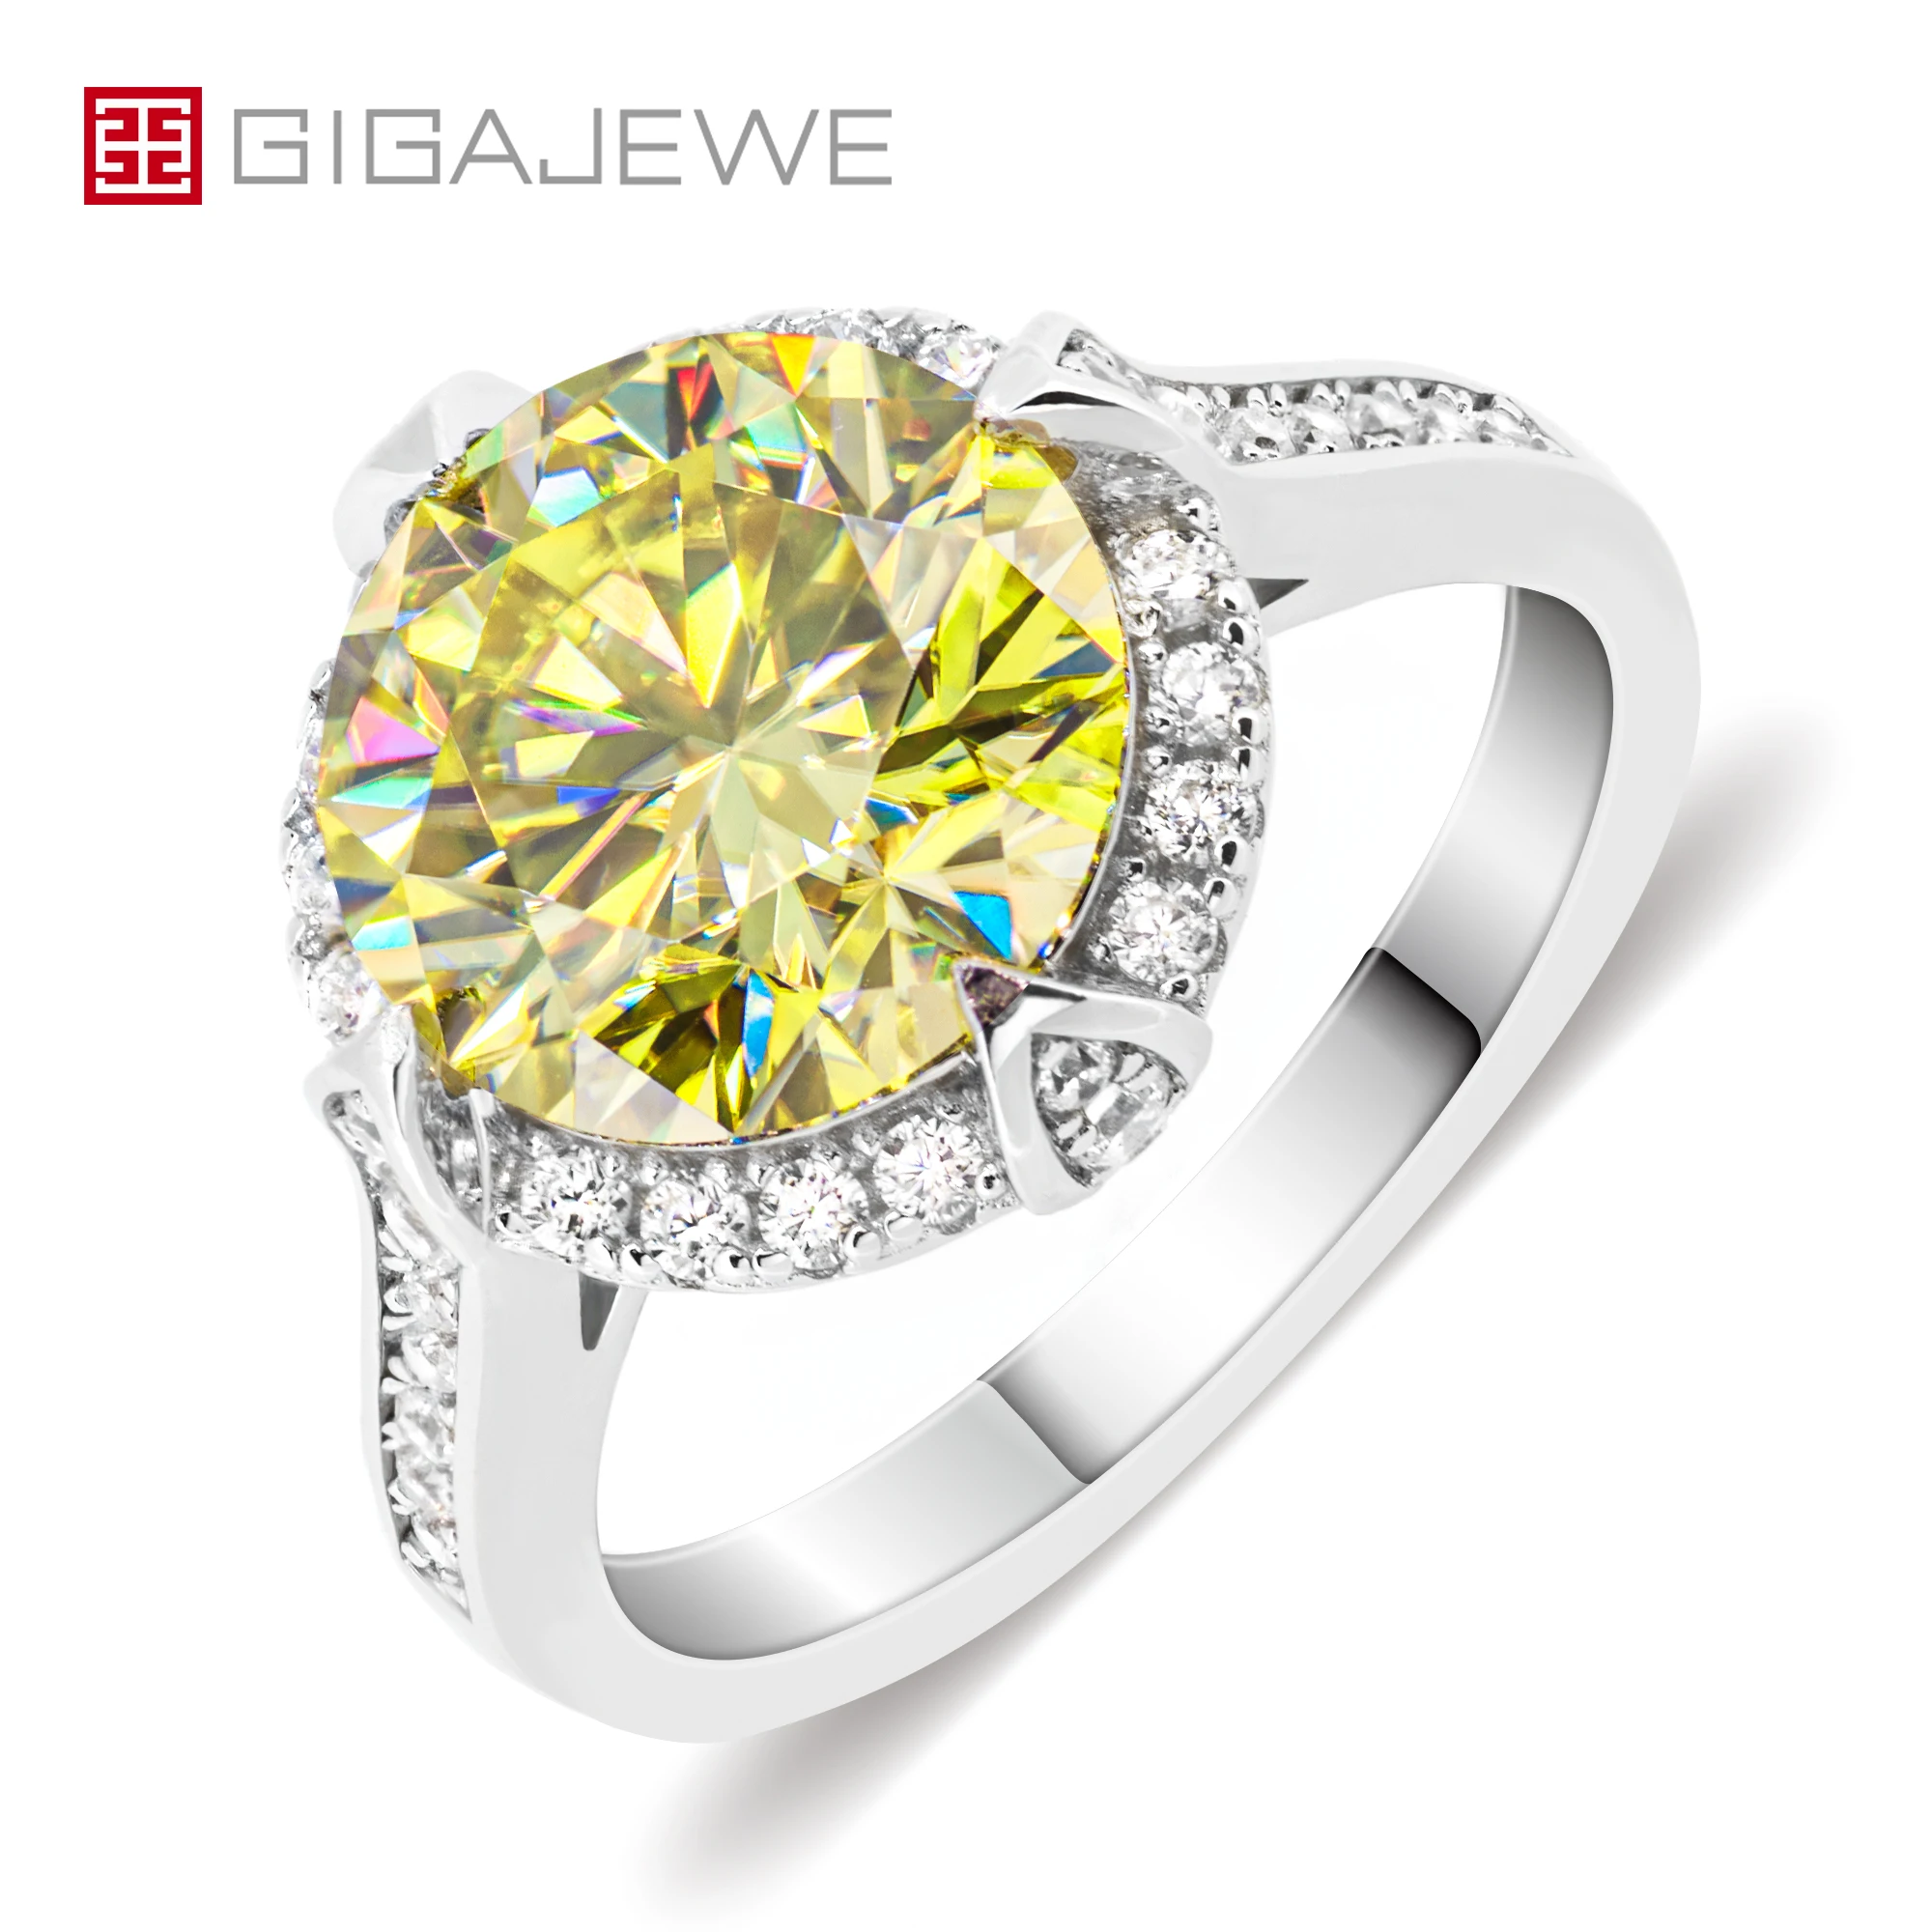 

GIGAJEWE 4ct 10mm Round Cut Moissanite vivid yellow Color 9K/14K/18K White Gold Ring , Wedding Engagement Ring